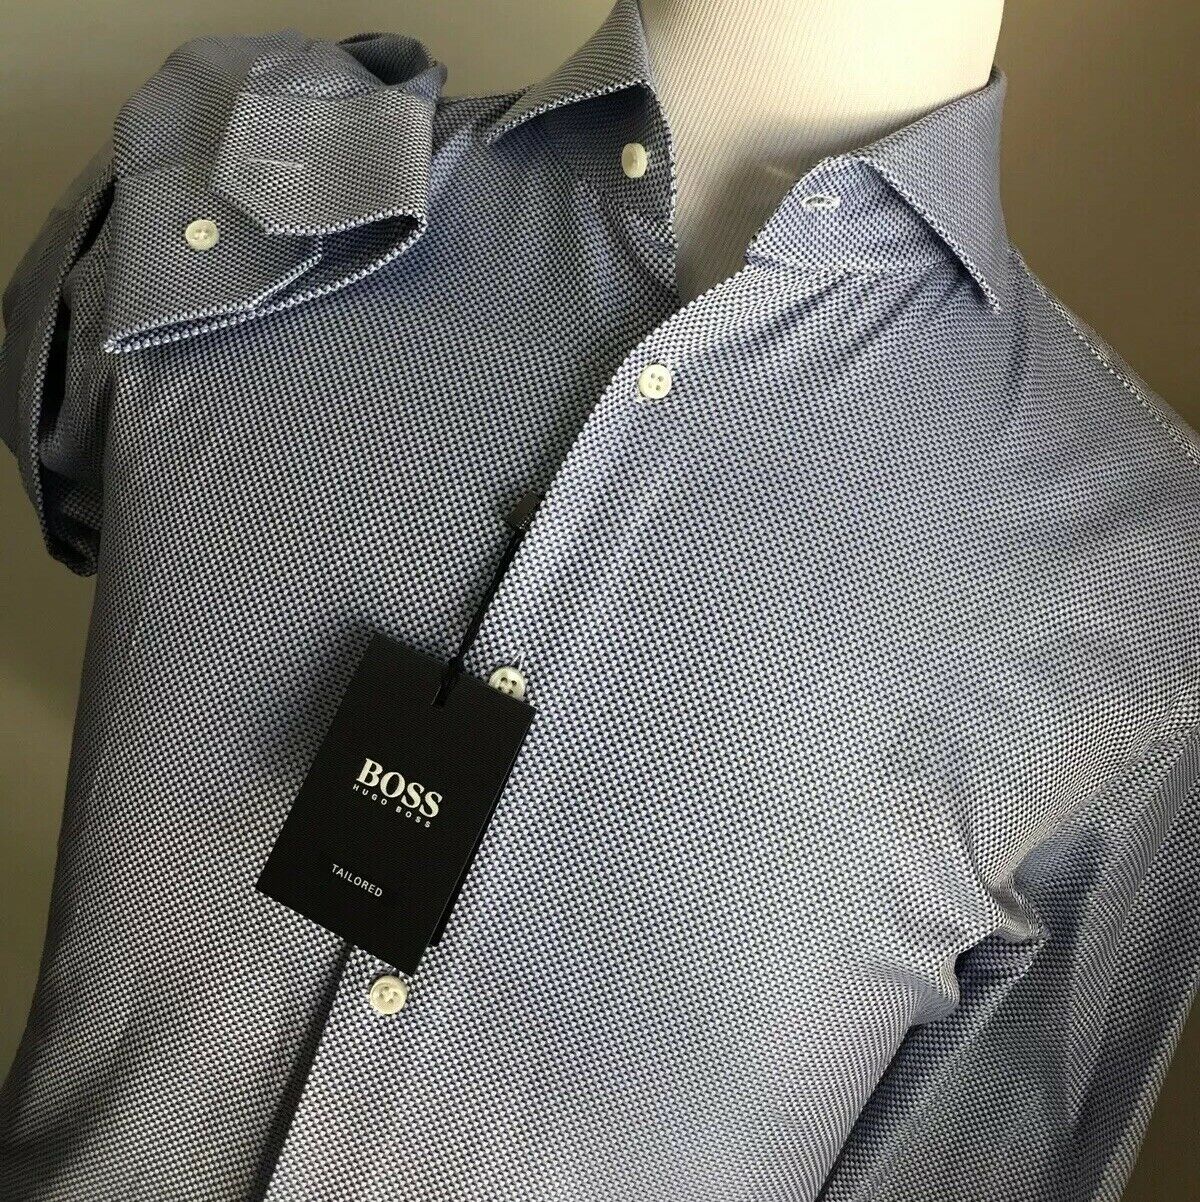 Neu mit Etikett: 200 $ Hugo Boss maßgeschneidertes blaues Herrenhemd in schmaler Passform, Größe 42/16,5